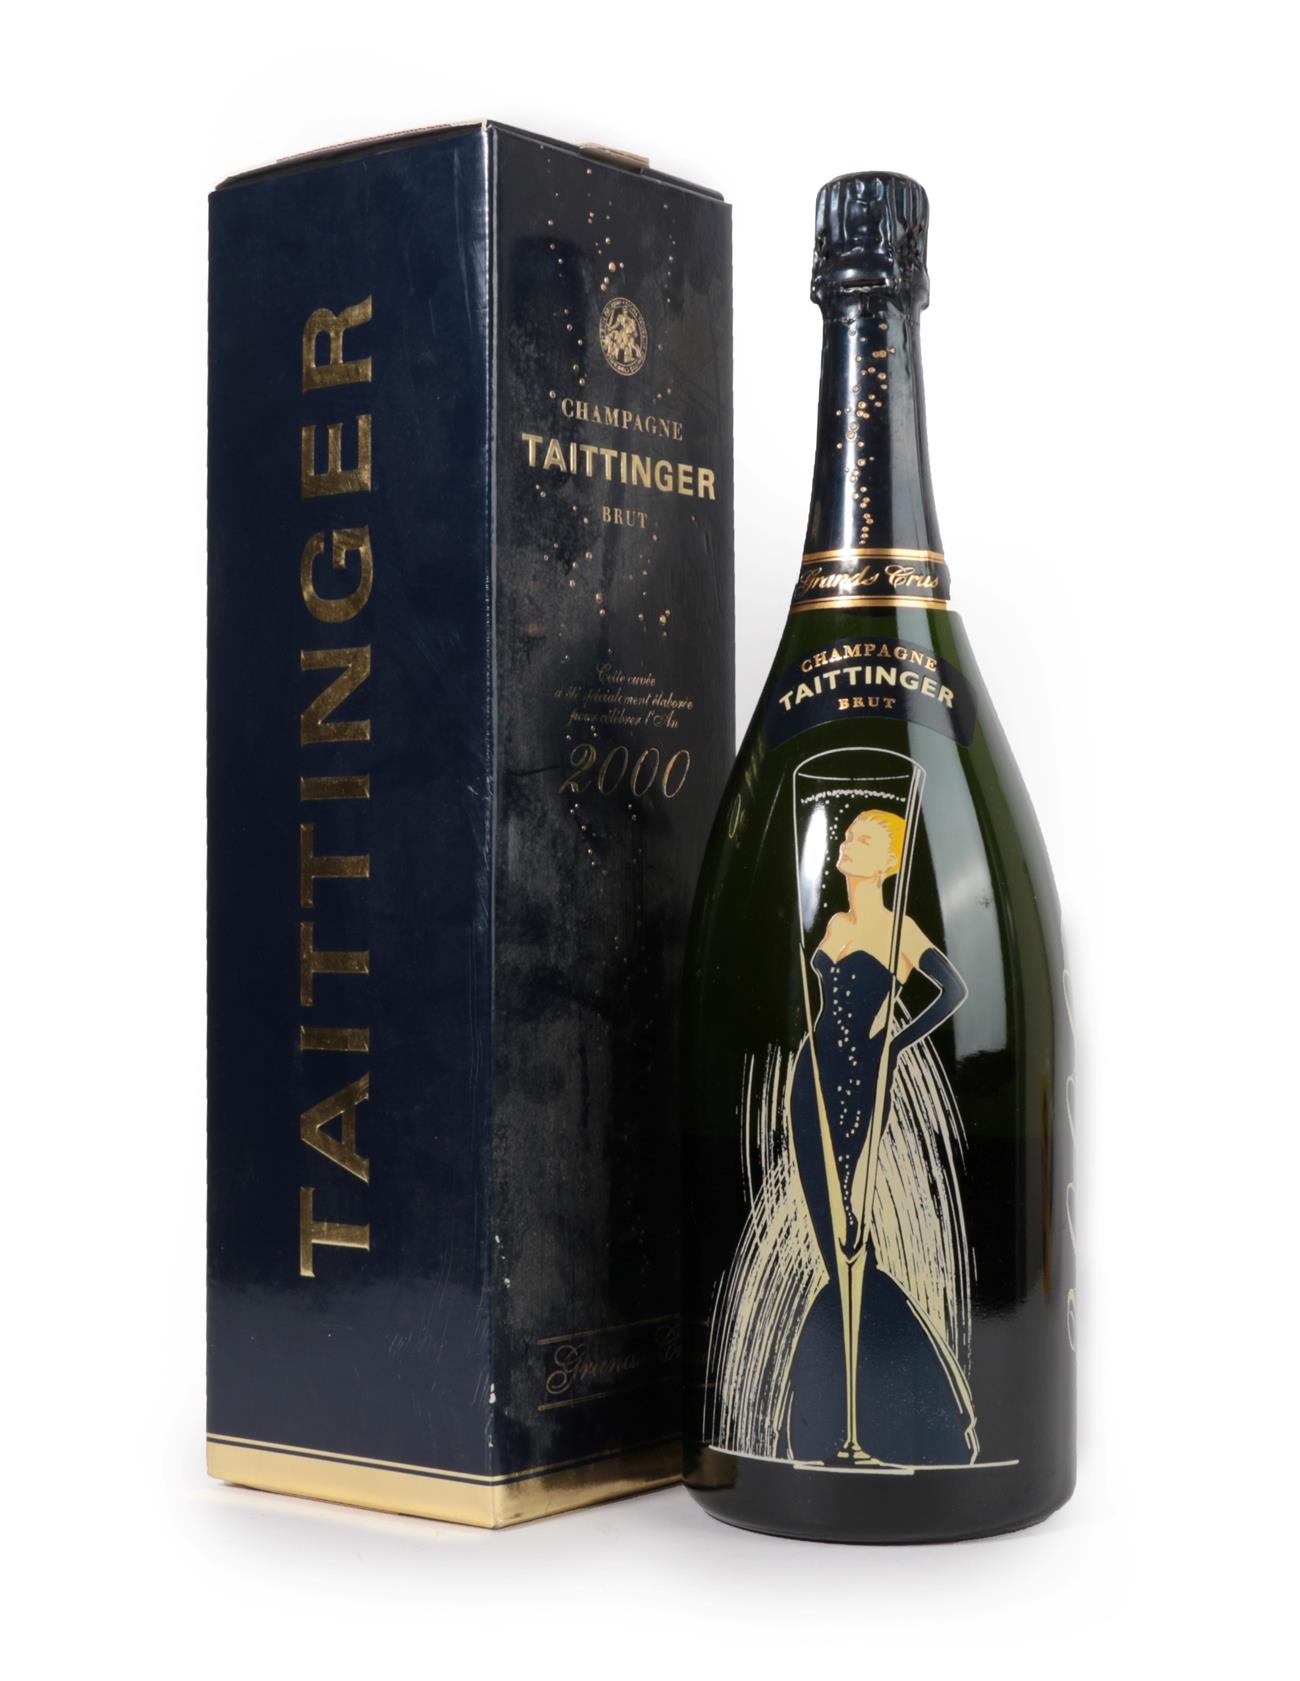 Taittinger Grand Cru Brut Champagne 2000 (one magnum)